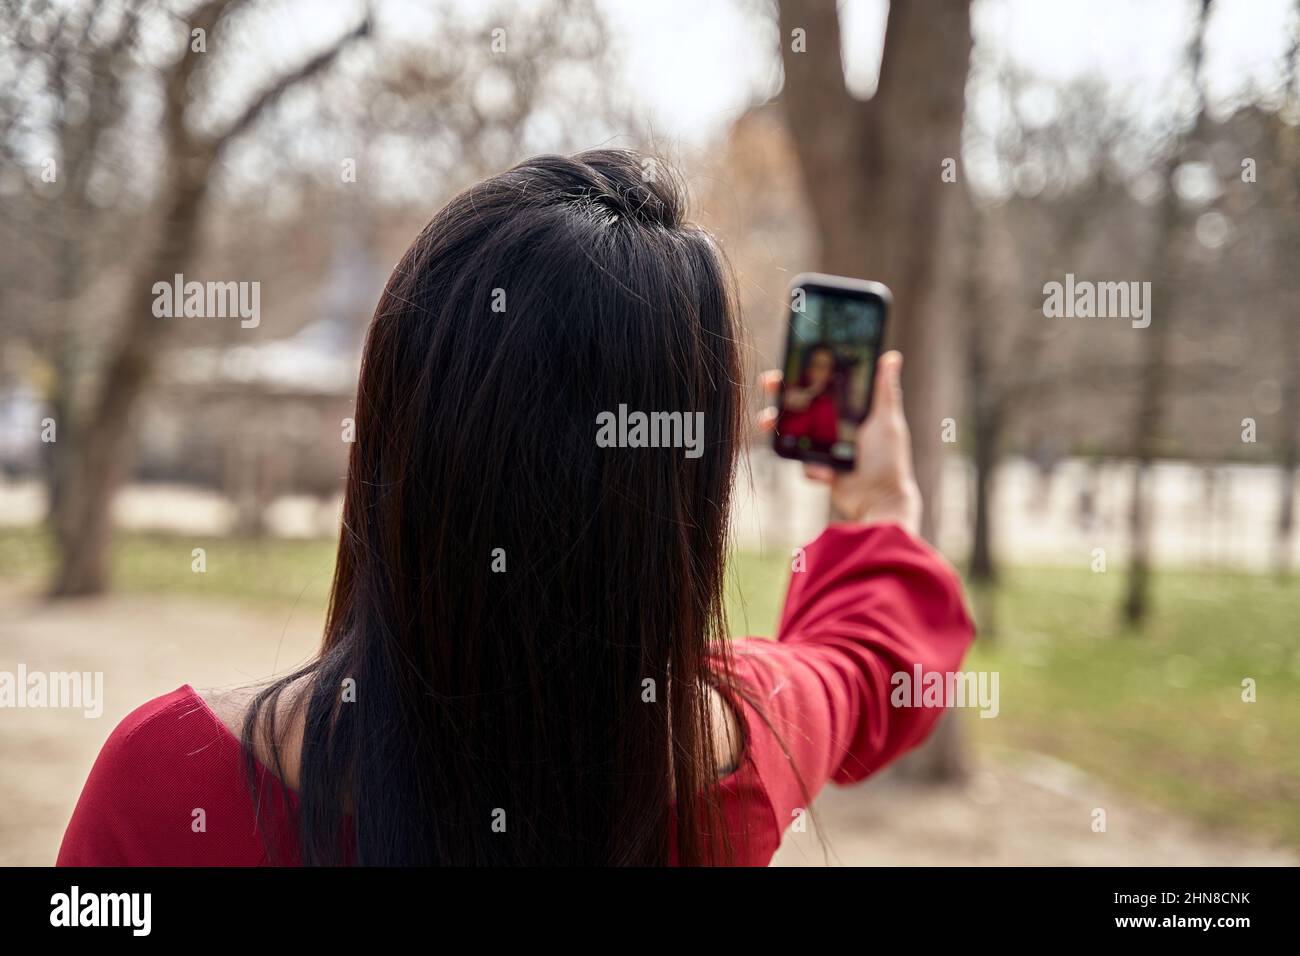 Rückansicht einer anonymen Frau mit schwarzen Haaren, die auf dem Smartphone ein Selbstporträt aufnahm, während sie im Park mit hohen Bäumen stand Stockfoto